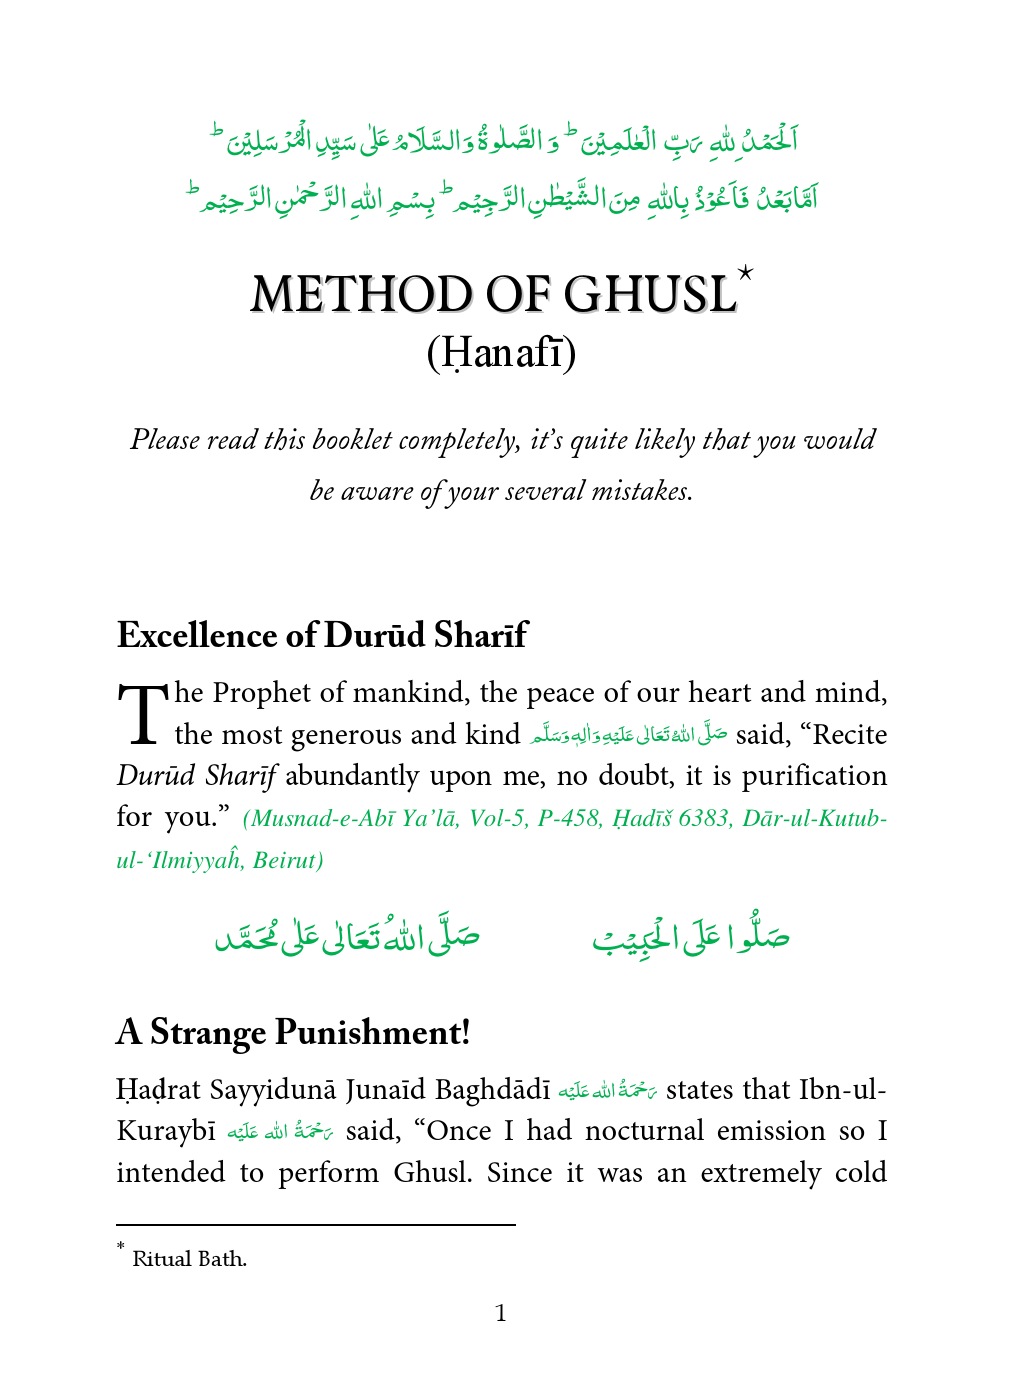 MethodOfGhuslHanafi.pdf, 38- pages 